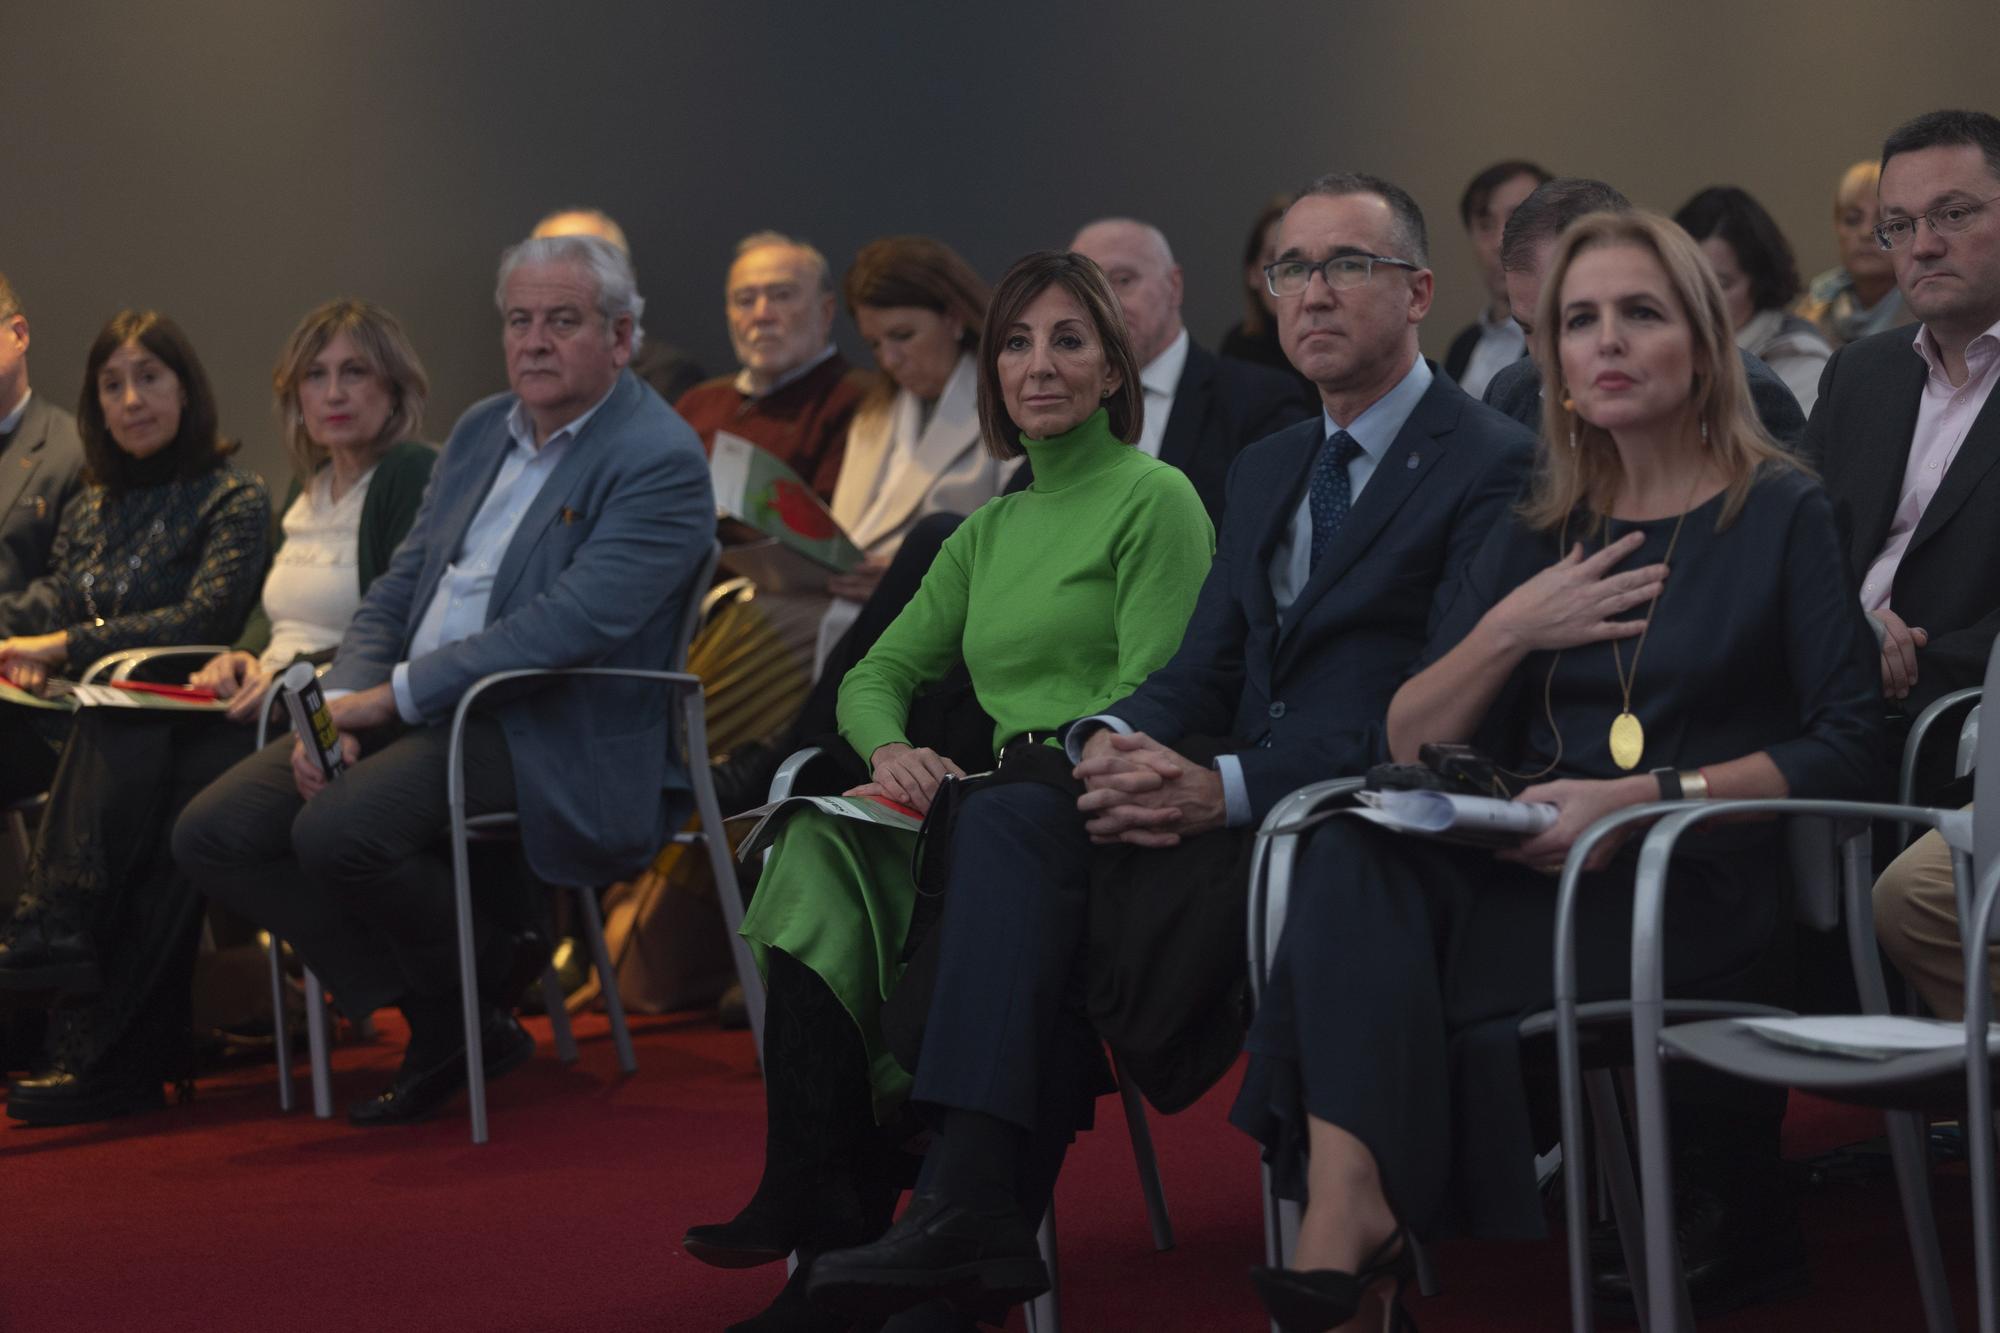 Quinto aniversario del Suplemento "Salud" de LA NUEVA ESPAÑA: acto en el Club Prensa